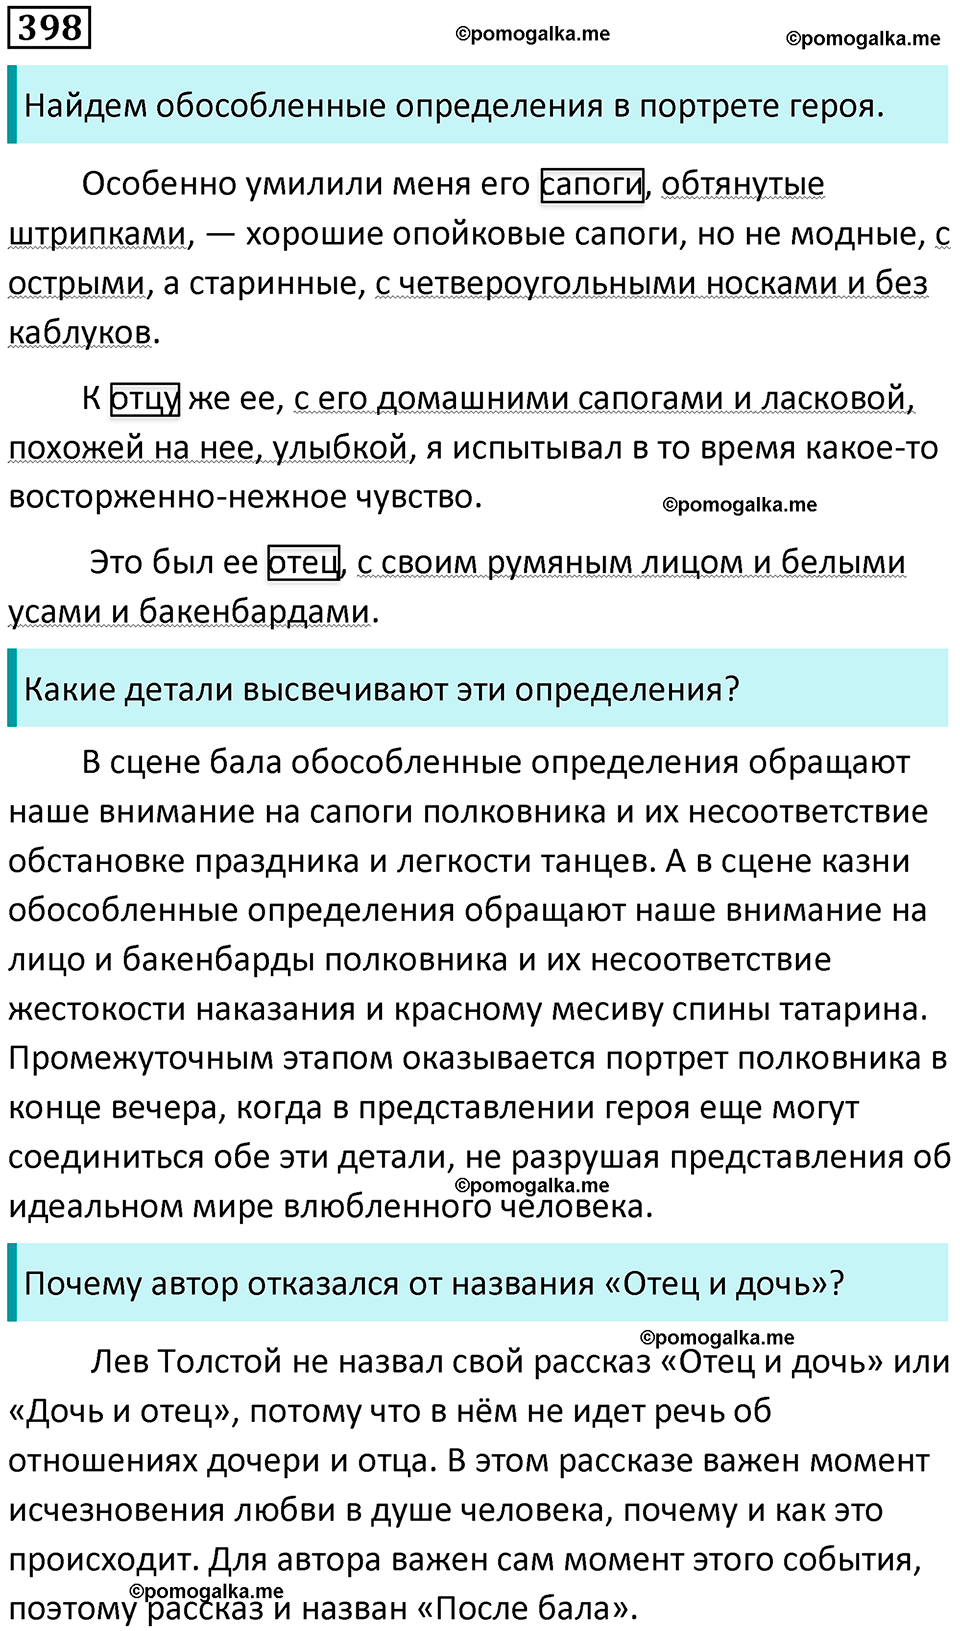 разбор упражнения №398 русский язык 8 класс Бархударов 2023 год